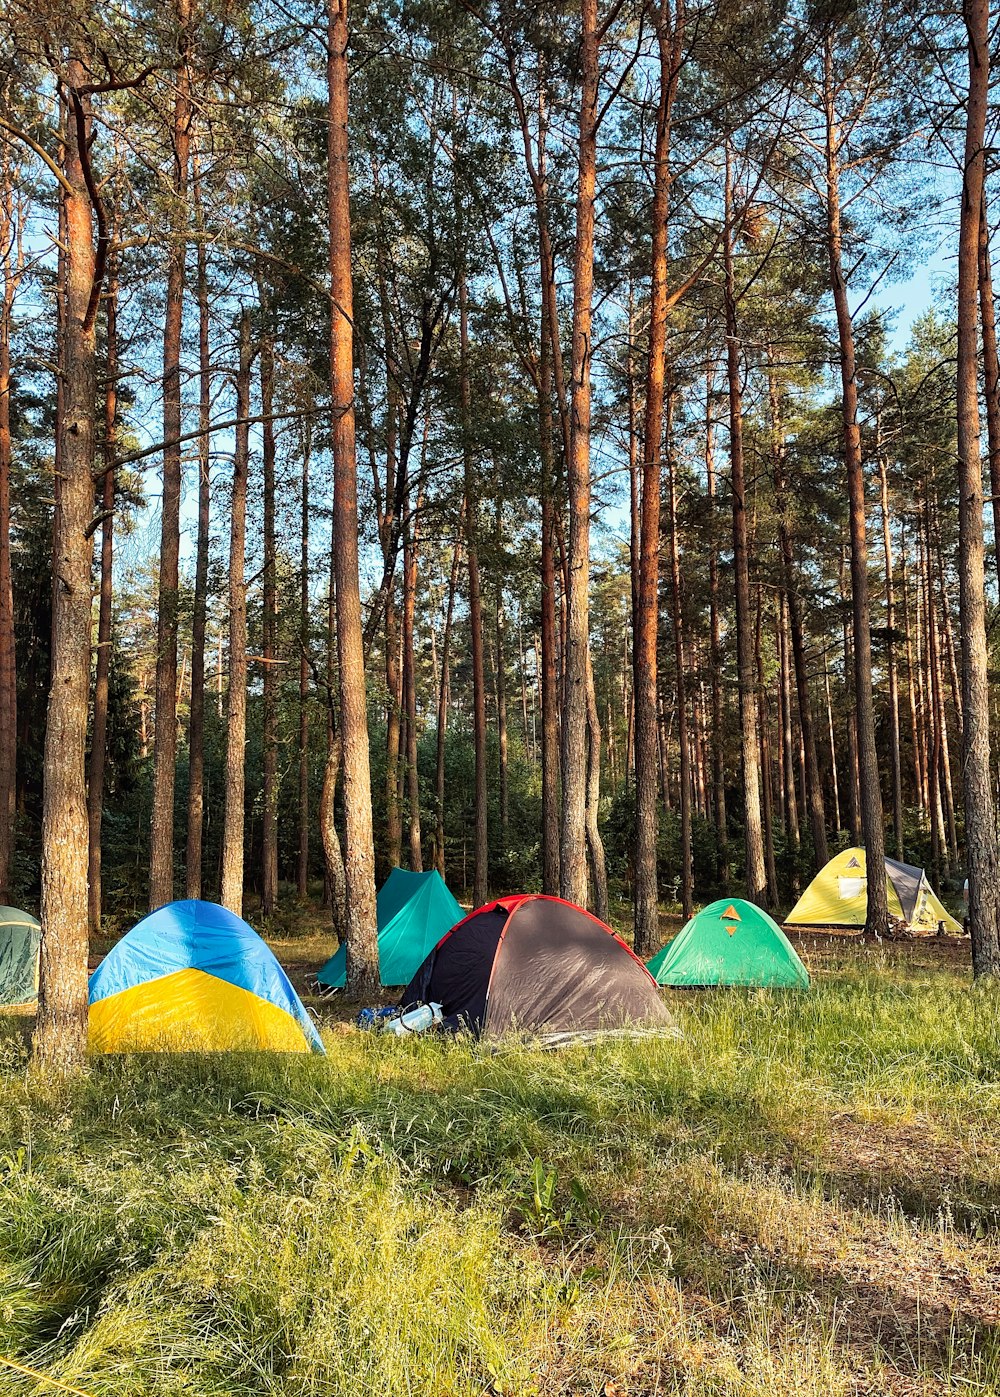 Tenda a cupola blu, gialla e rossa nella foresta durante il giorno